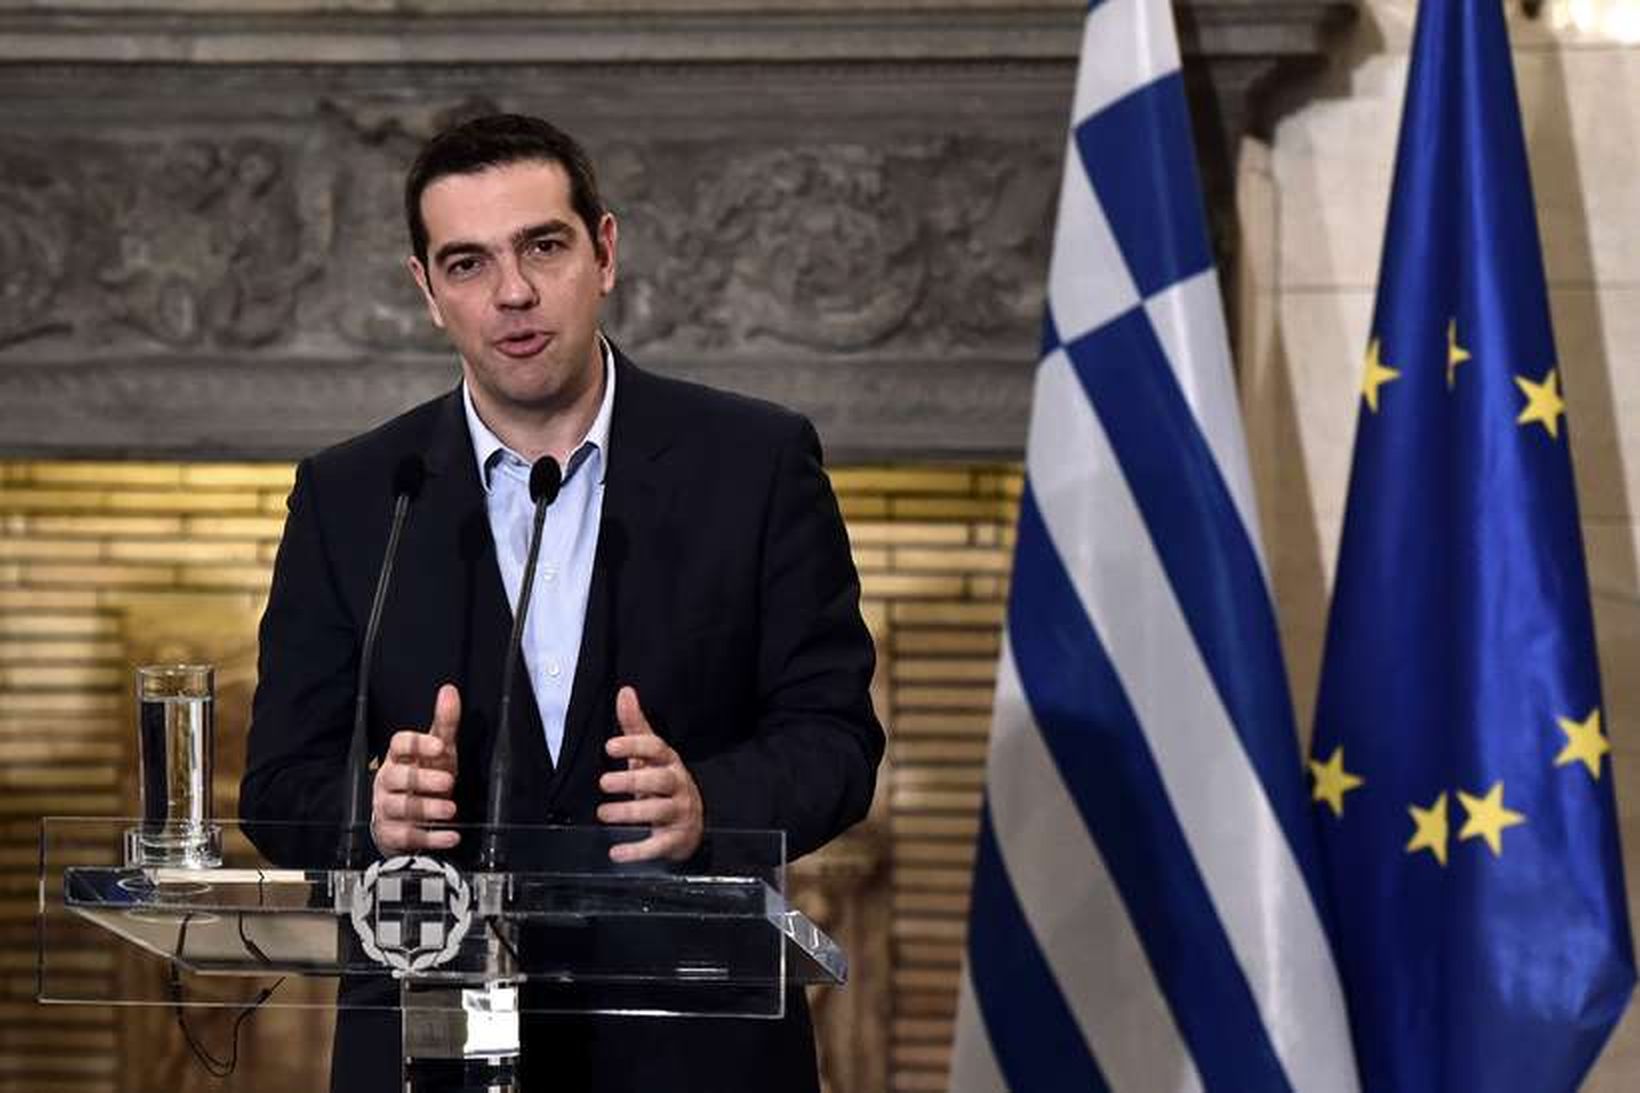 Forseti framkvæmdastjórnar Evrópusambandsins hefur áhyggjur af því að Alexis Tsipras …